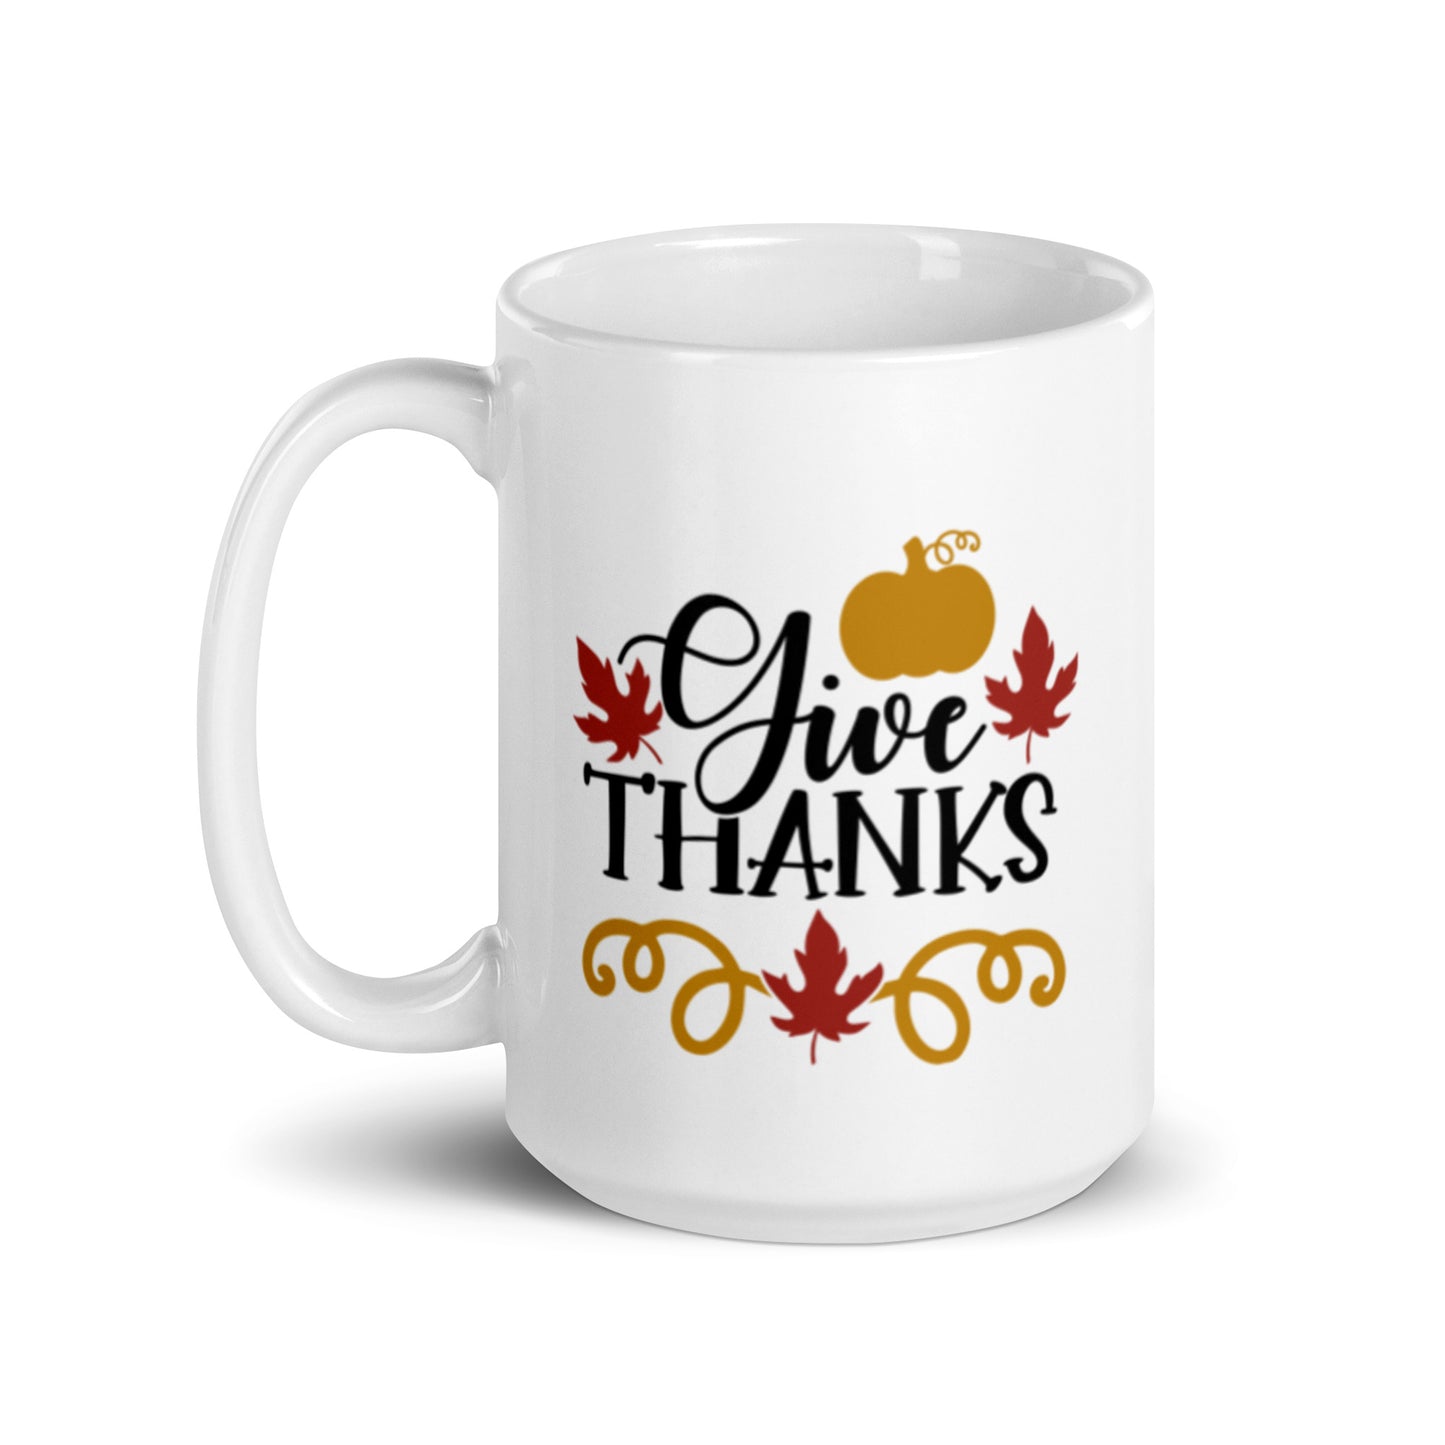 Give Thanks White glossy mug